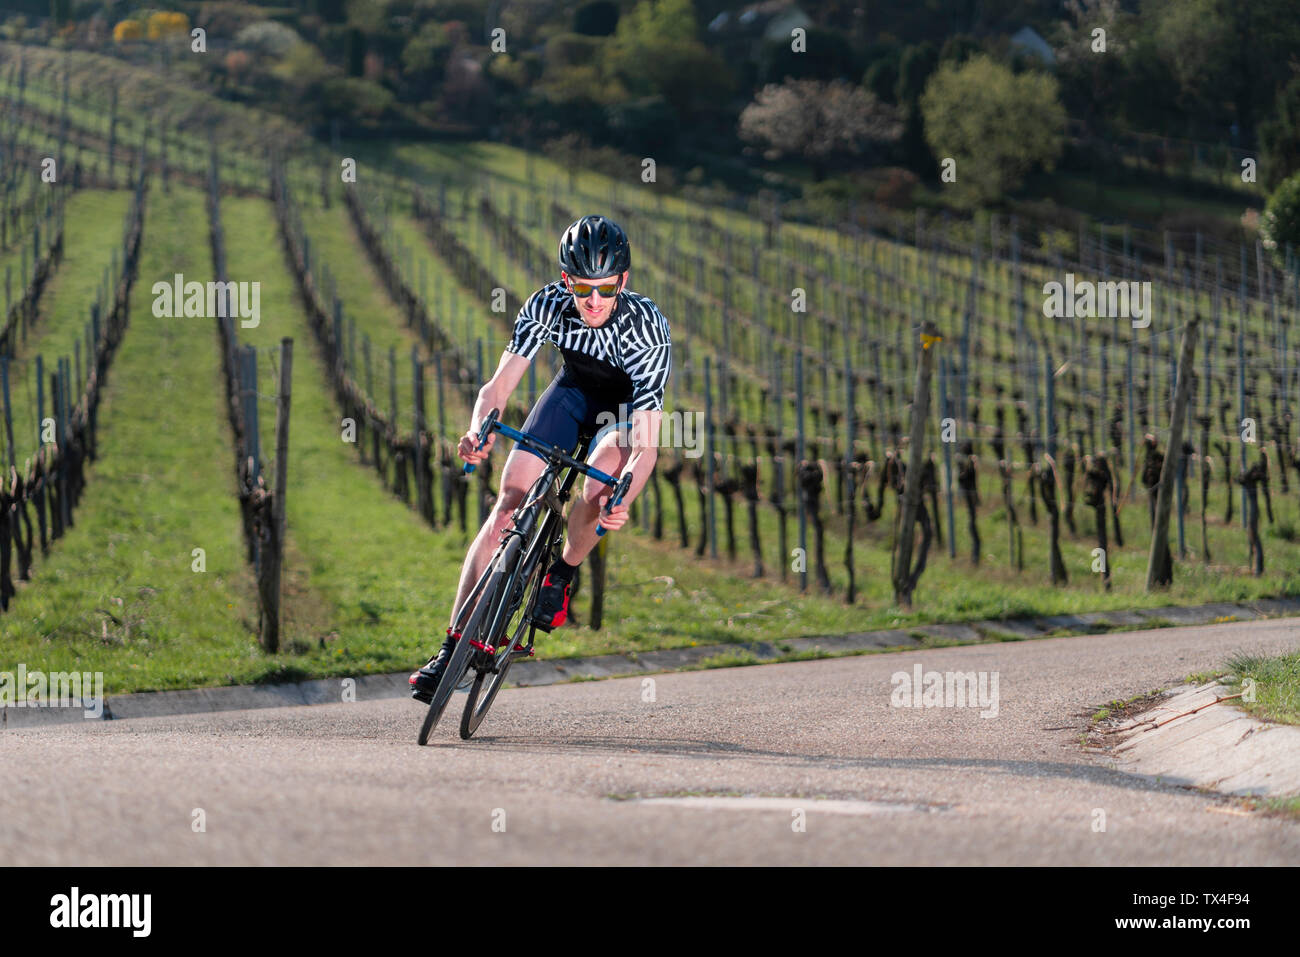 Alemania, Baden-Wuerttemberg, Fellbach, el hombre en el ciclo de carreras en el país por carretera a través de los viñedos Foto de stock